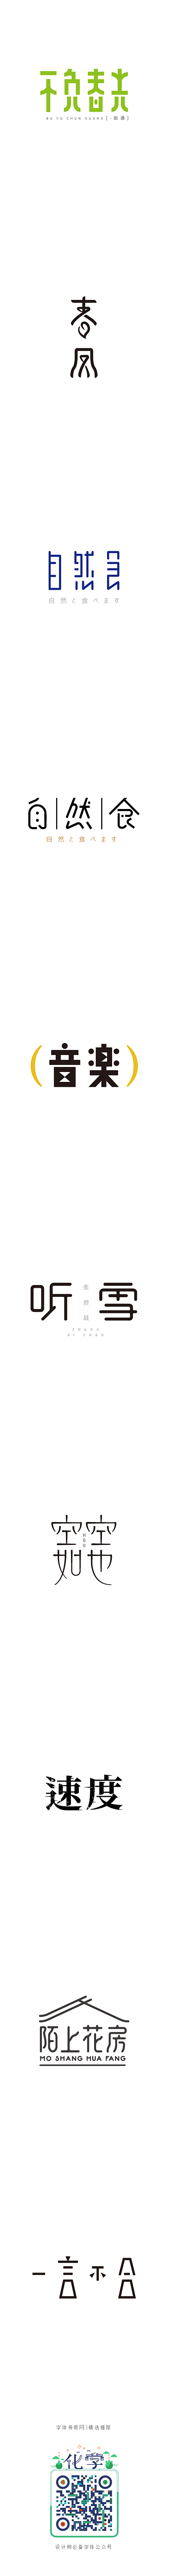 赵通字体小作第（十四期）-字体传奇网-中...